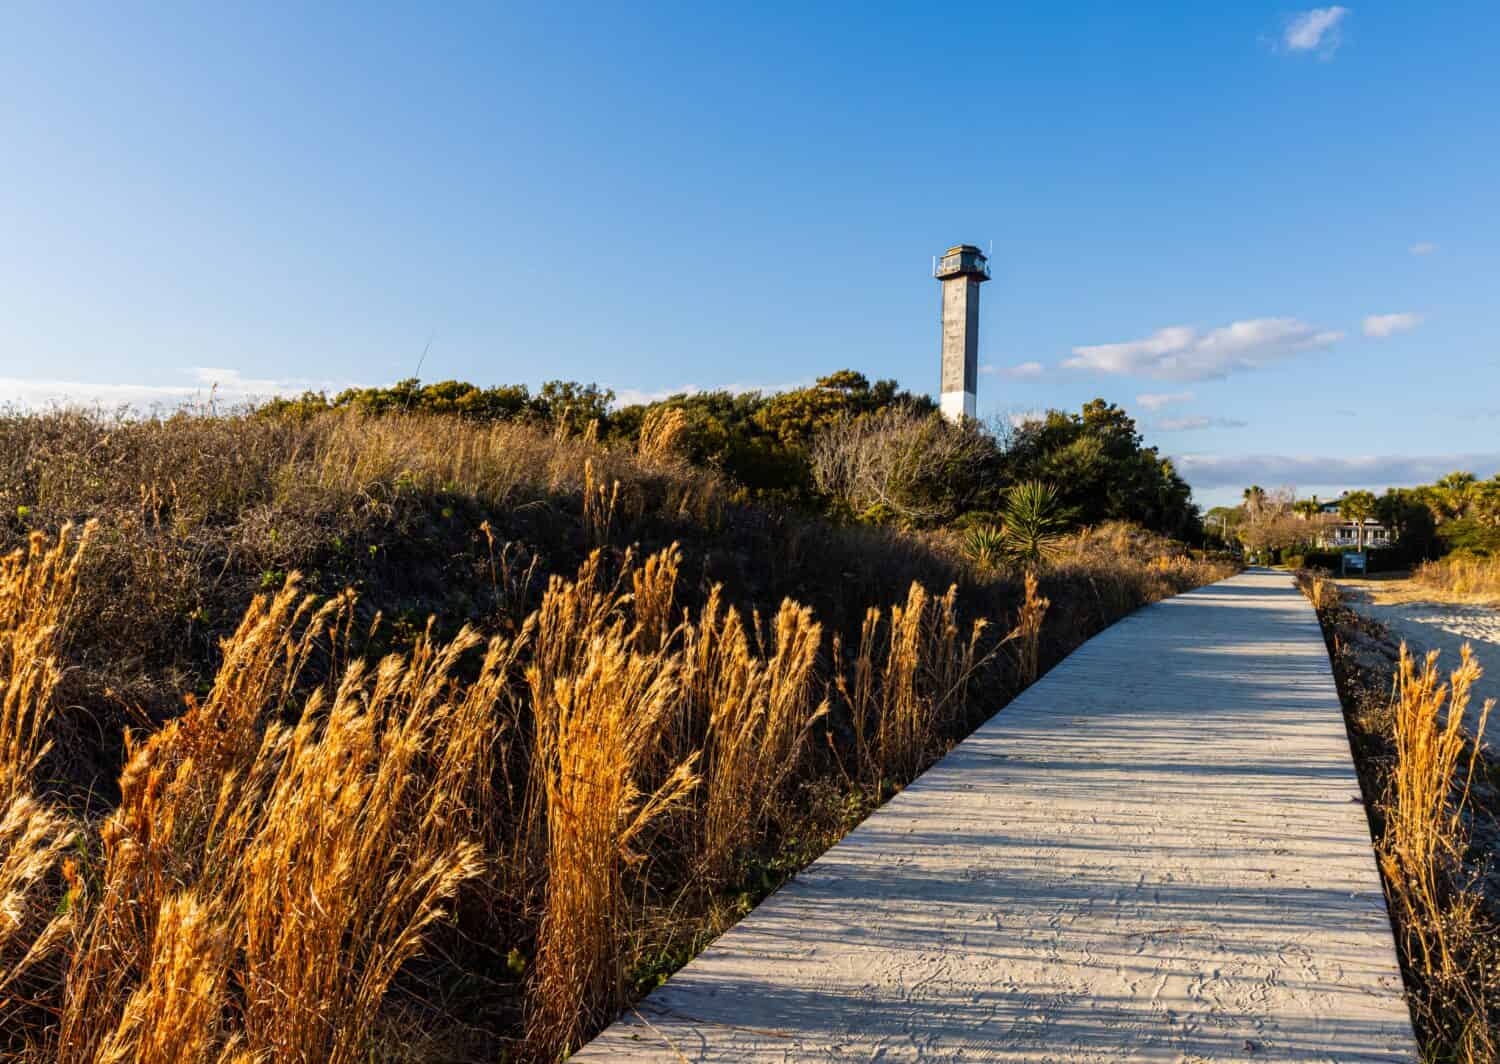 Le dune di sabbia della stazione 18 Beach e Sullivan's Island Lighthouse, Sullivan's Island, South Carolina, STATI UNITI D'AMERICA